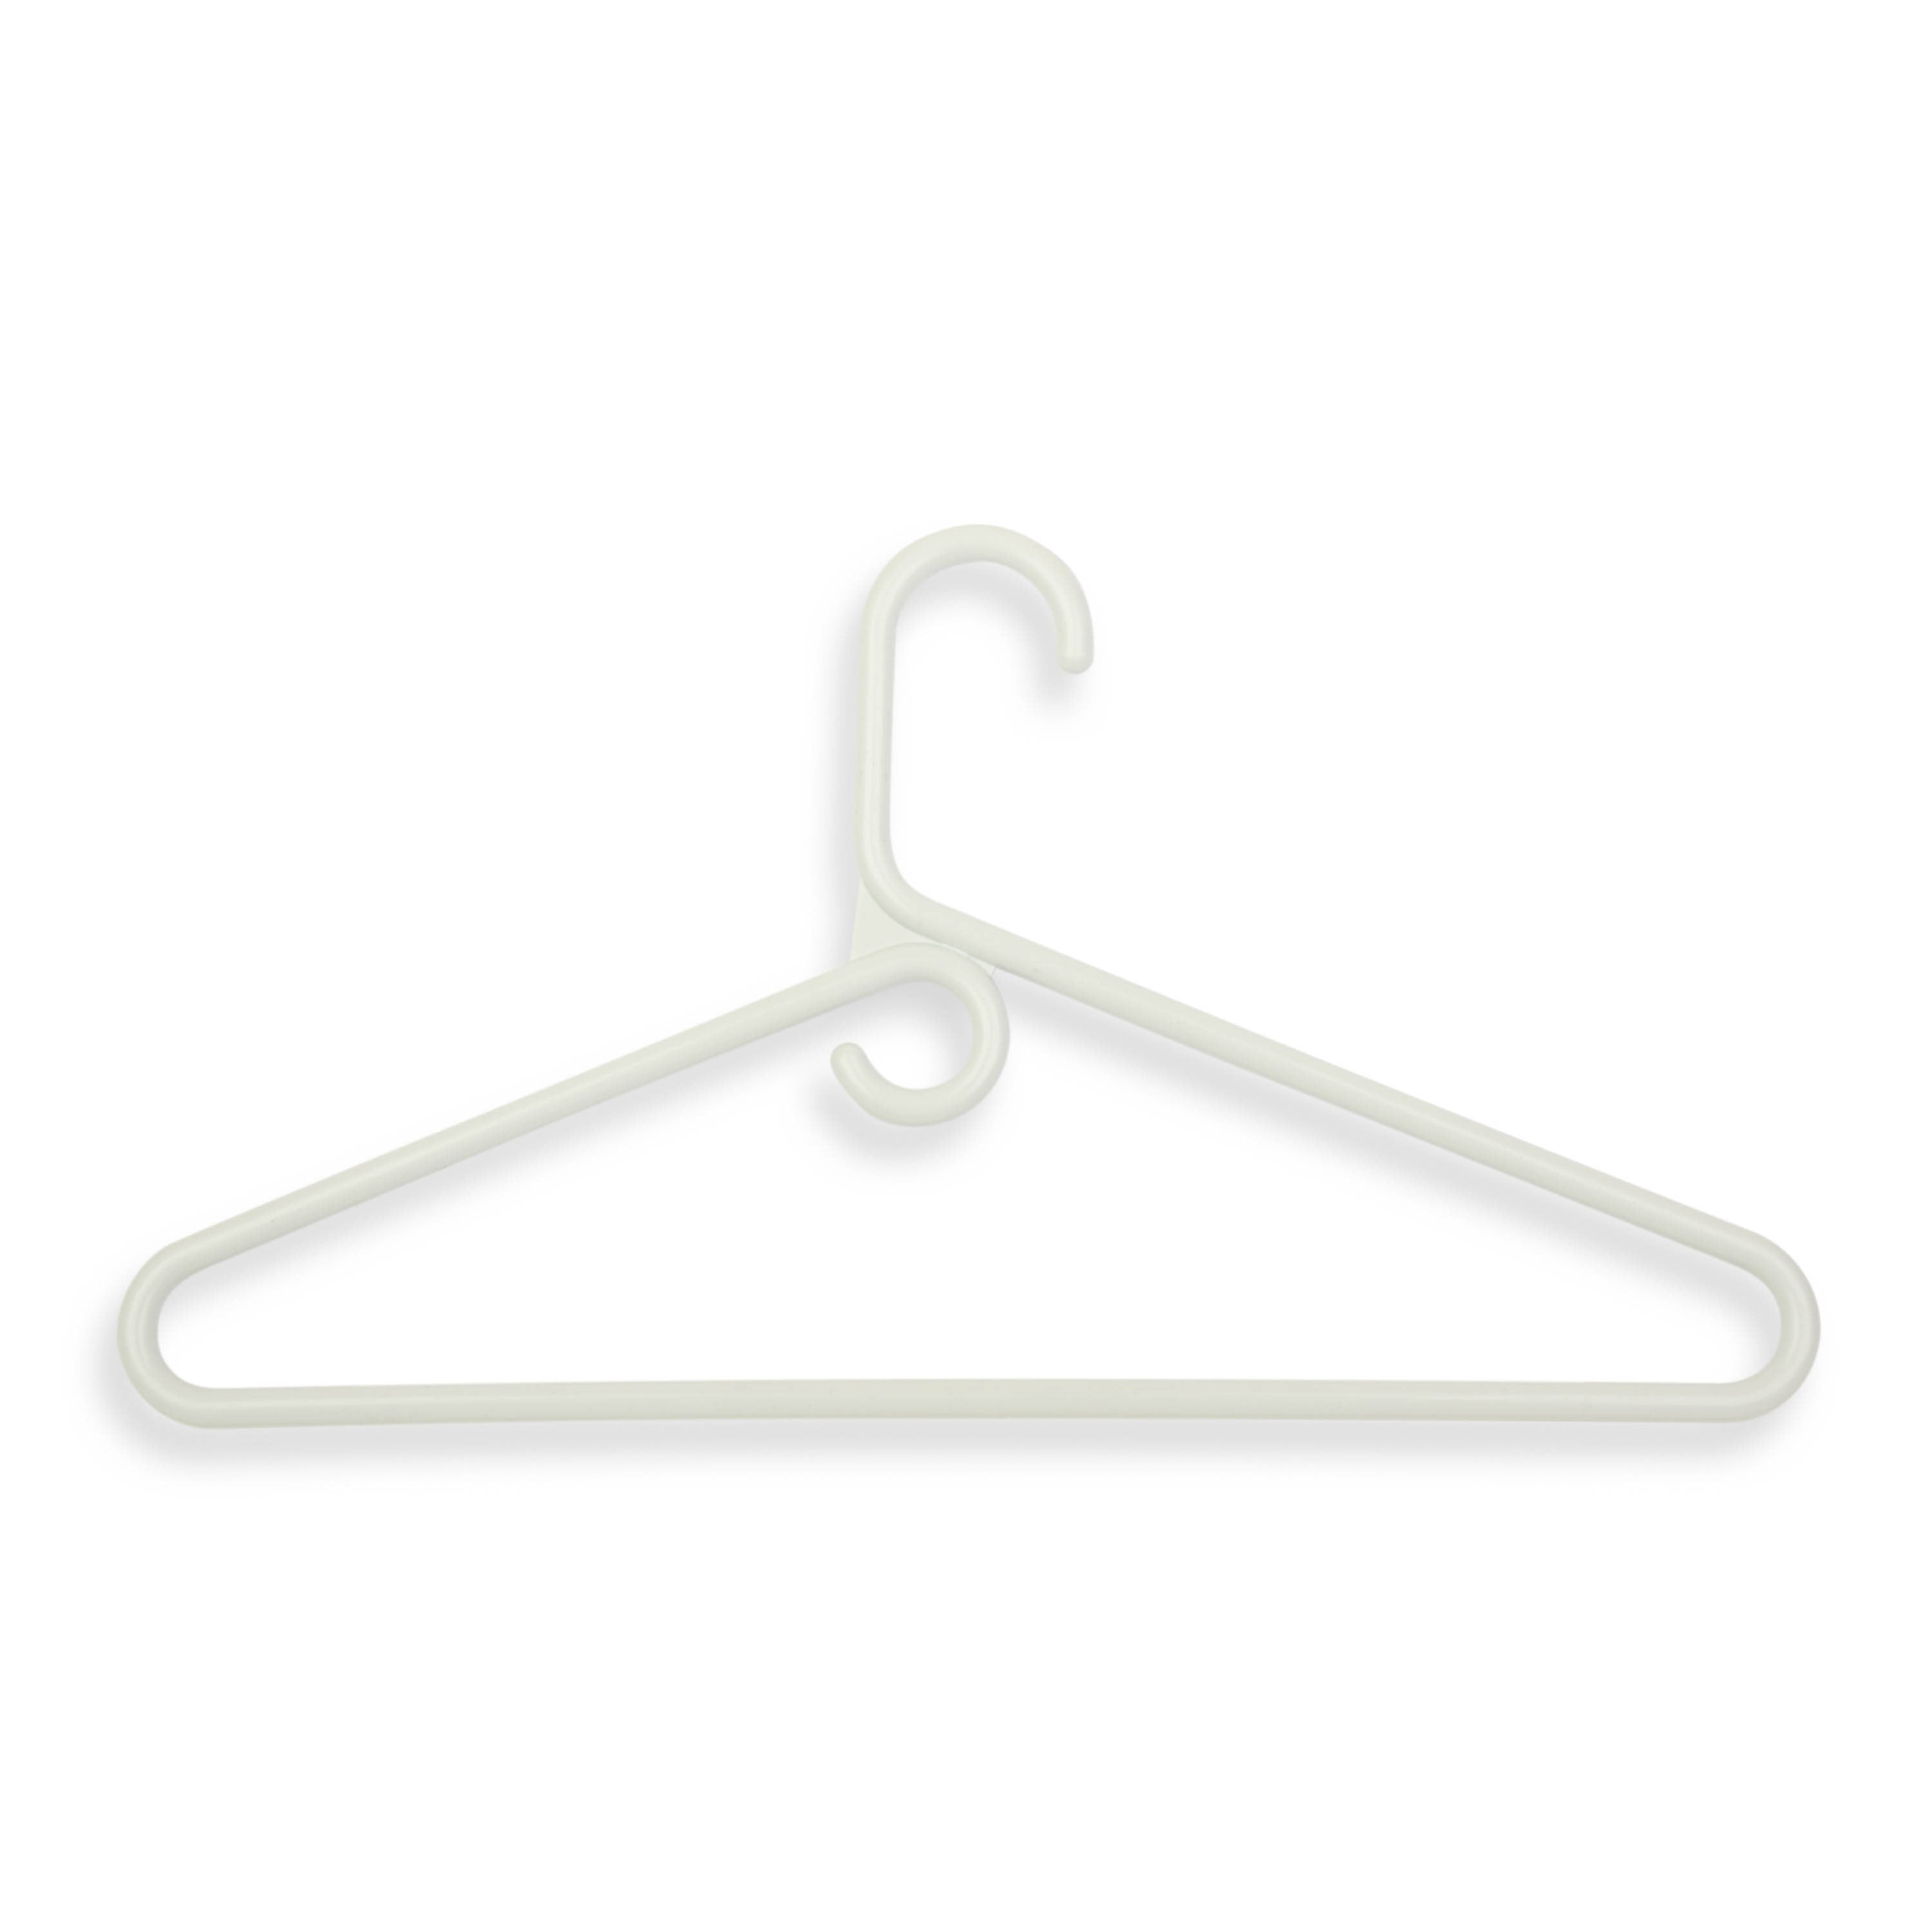 Super Heavy Weight Tubular Hanger (3 Pack), White